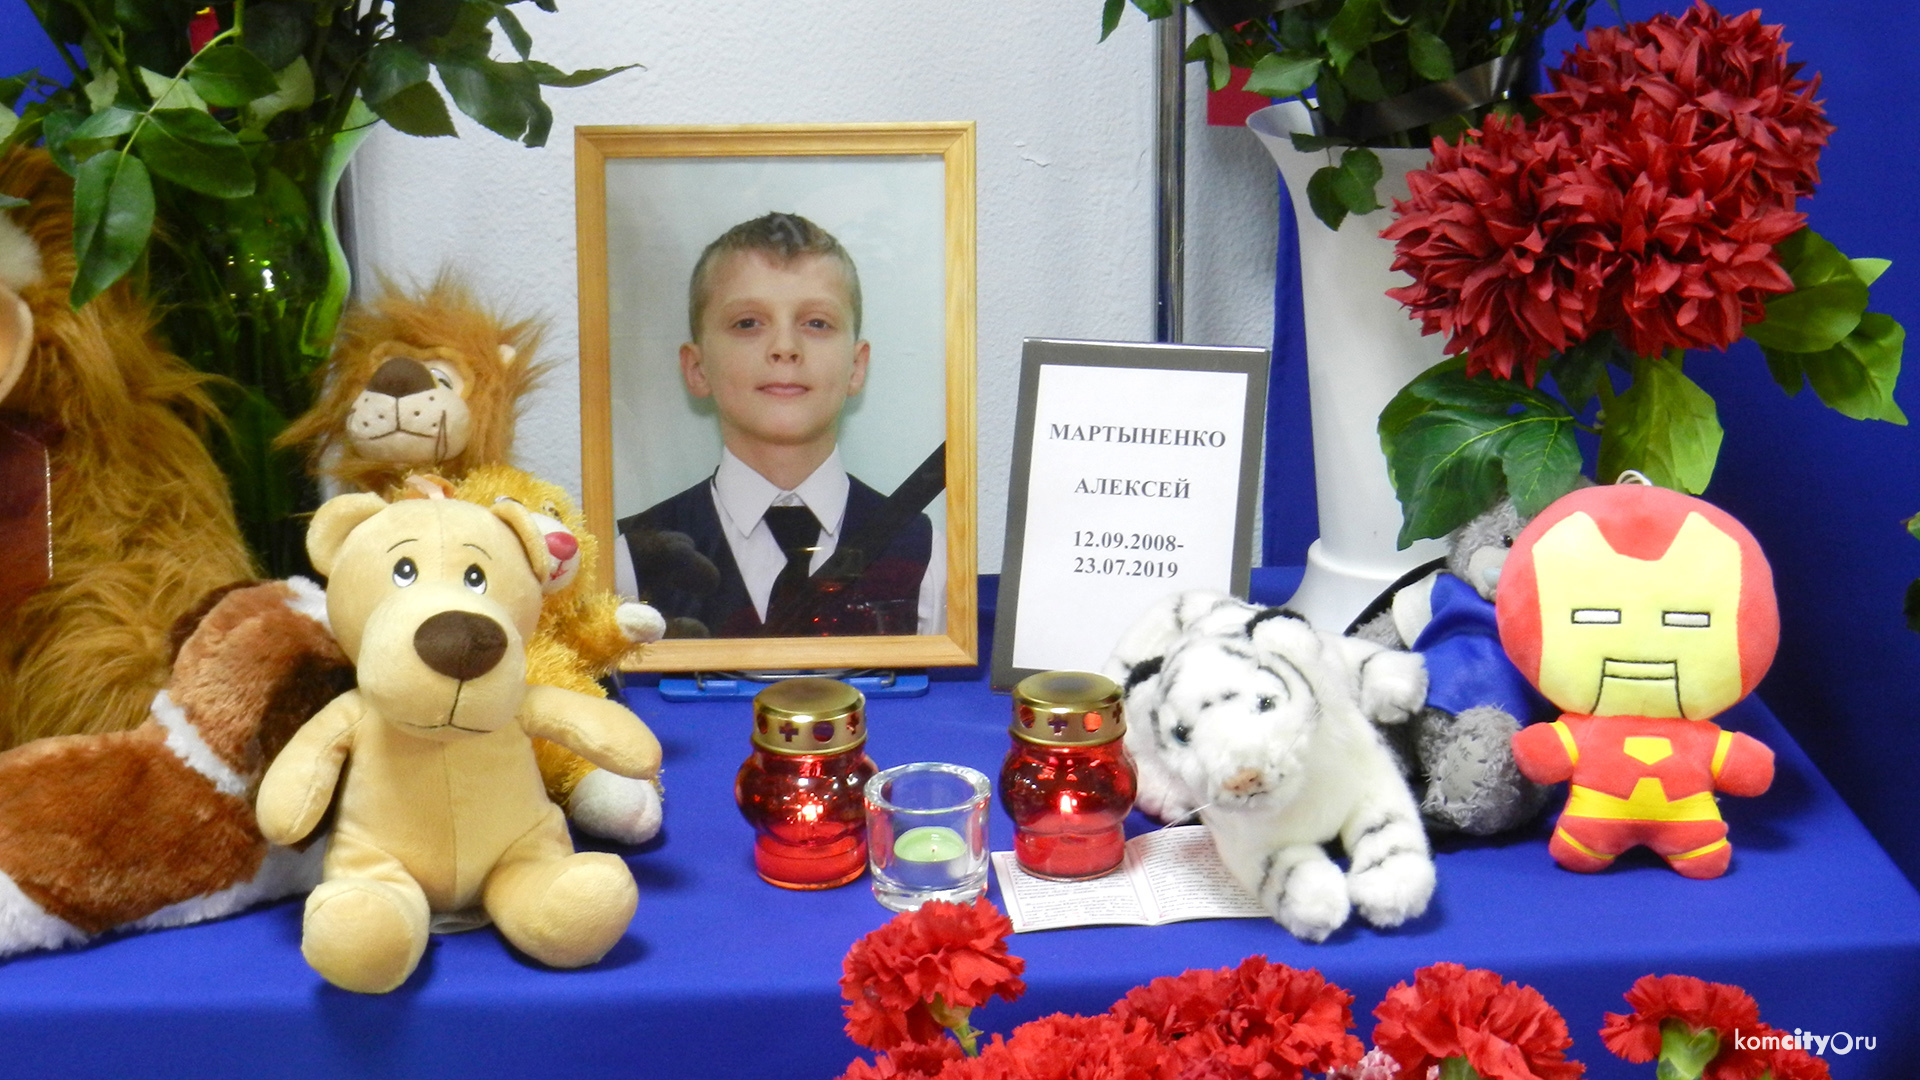 10-летнего Алексея Мартыненко, пытавшегося спасти других детей во время пожара на «Холдоми», посмертно наградили орденом Мужества